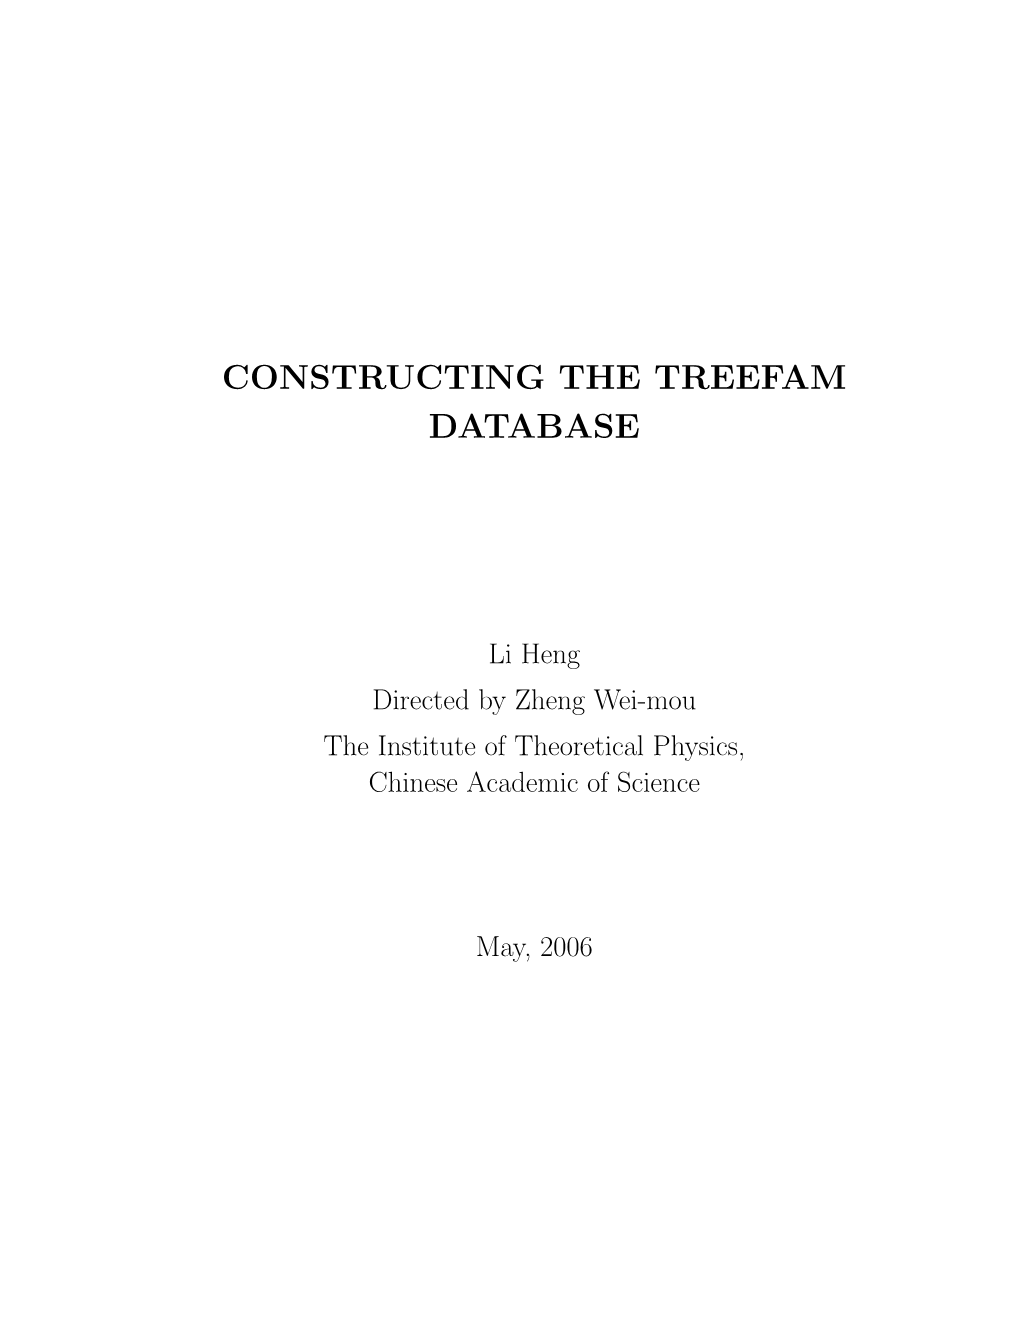 Constructing the Treefam Database